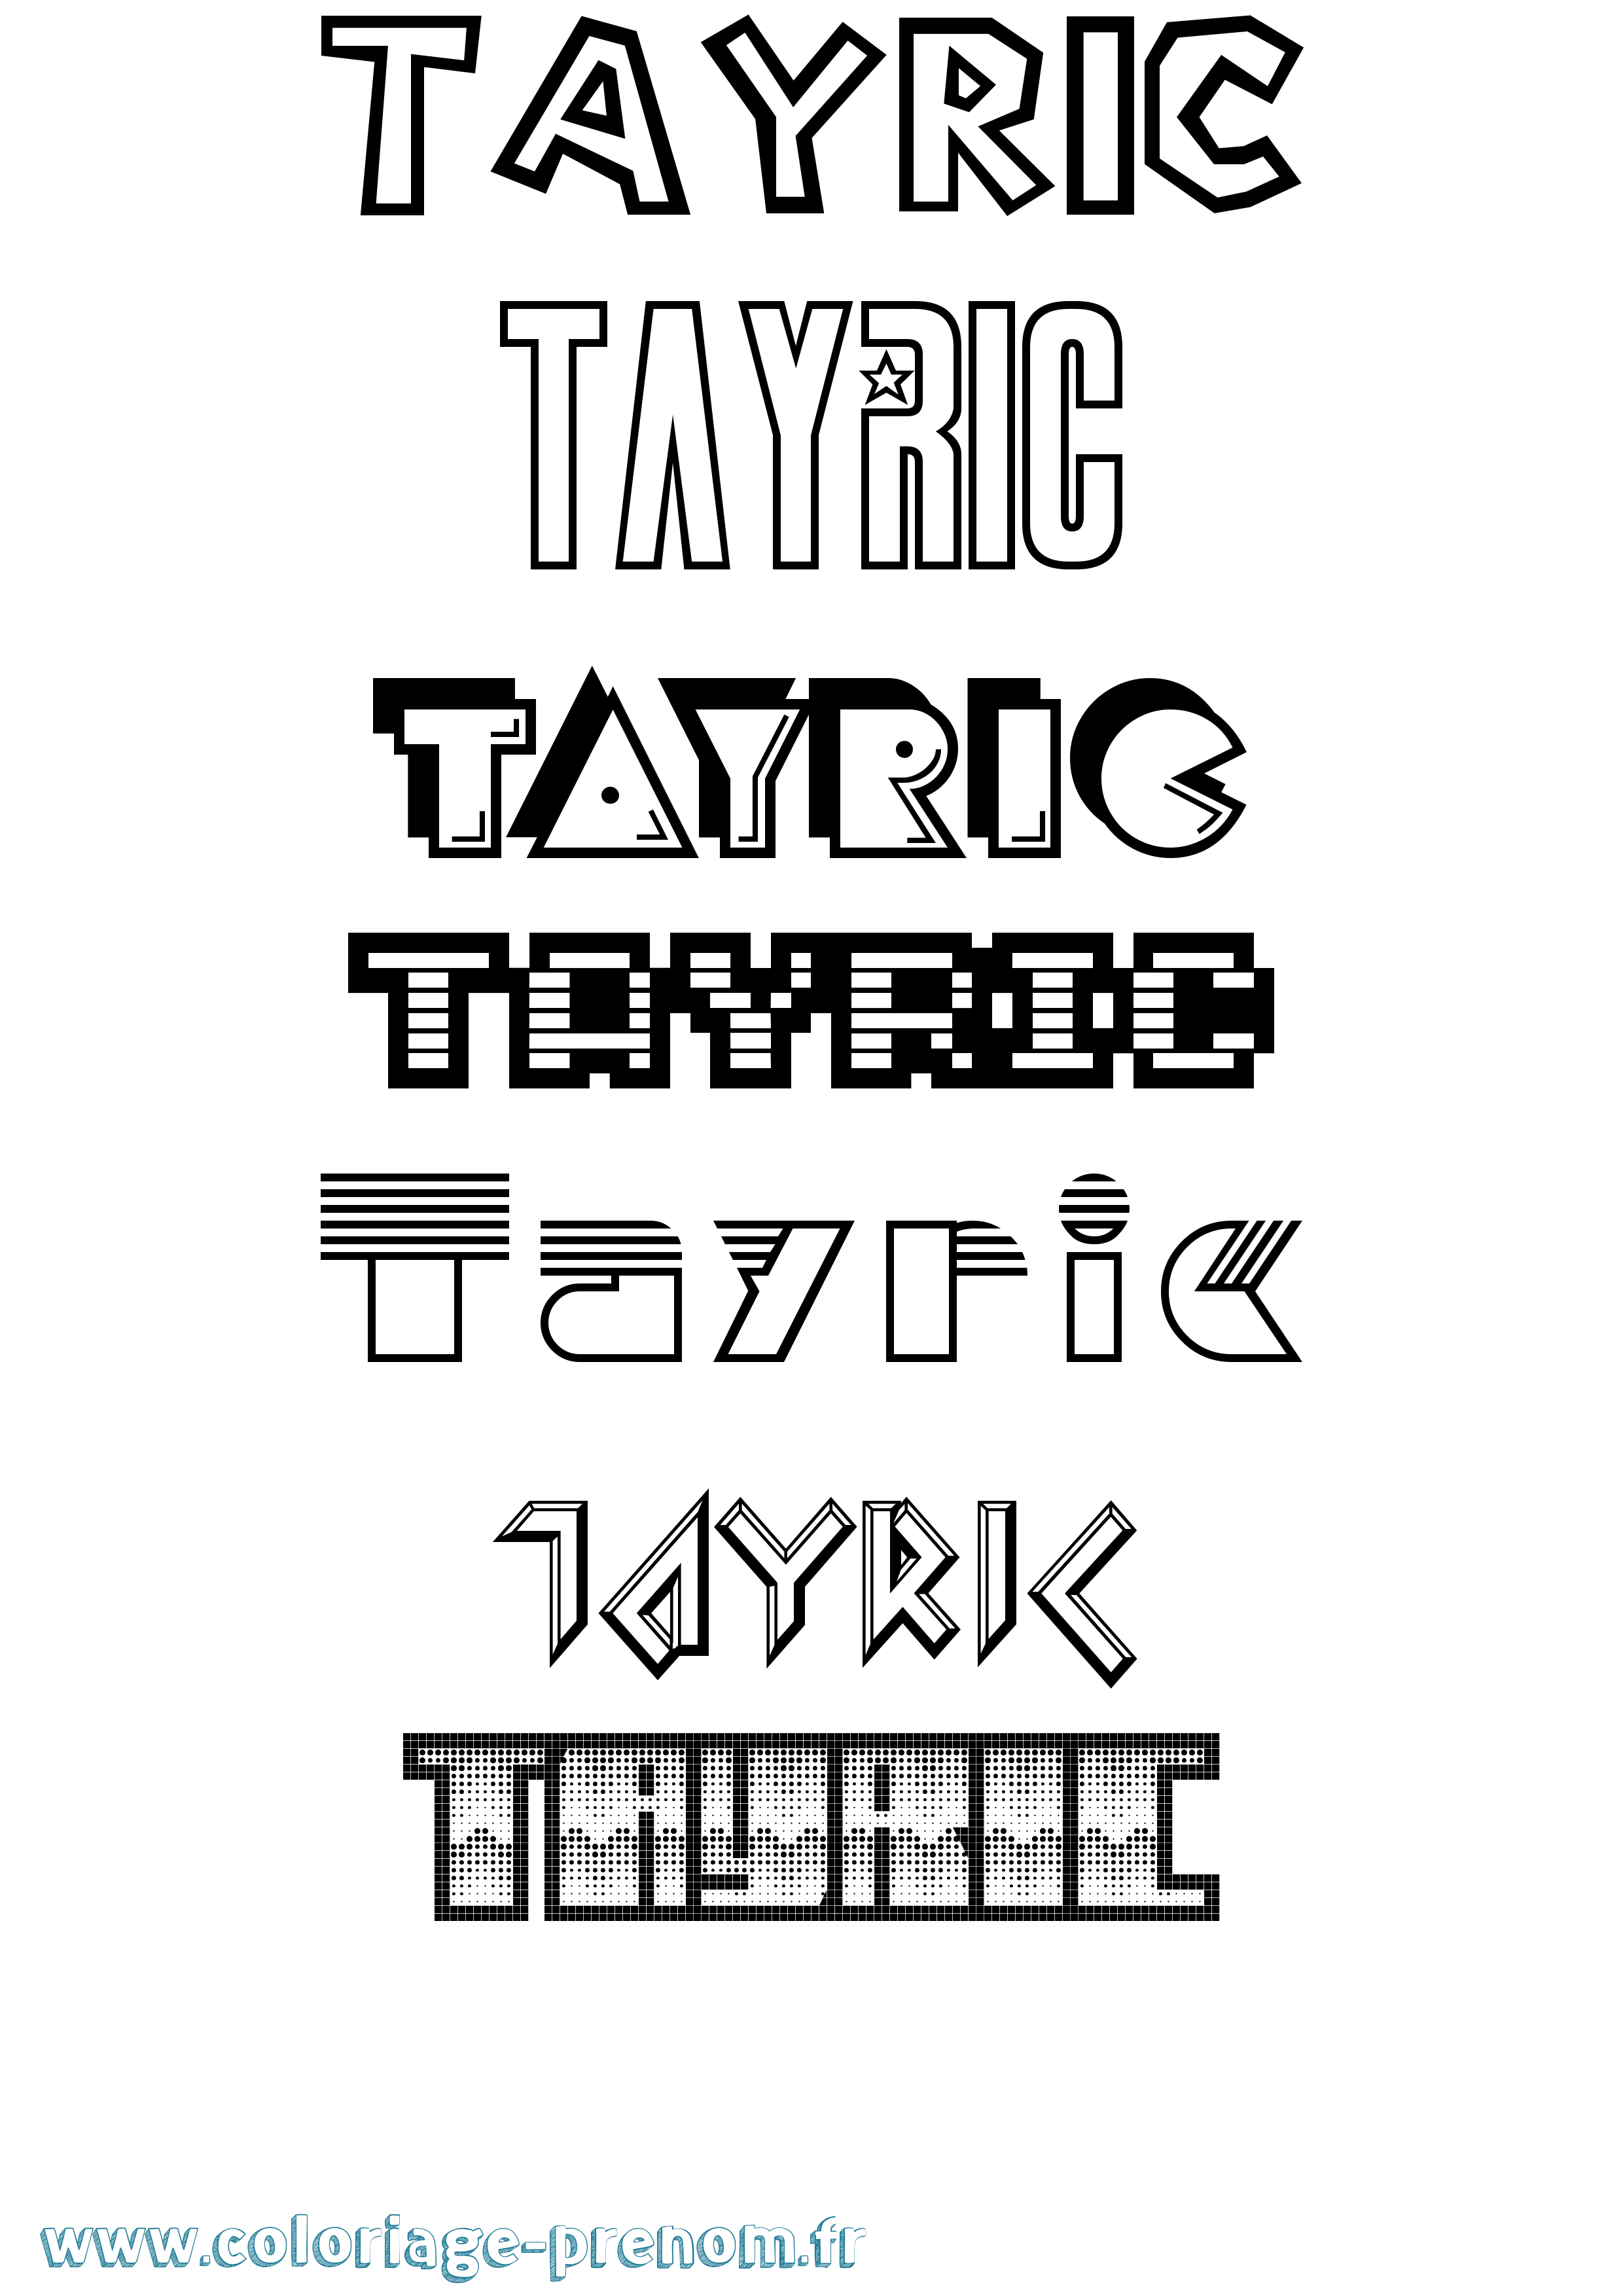 Coloriage prénom Tayric Jeux Vidéos